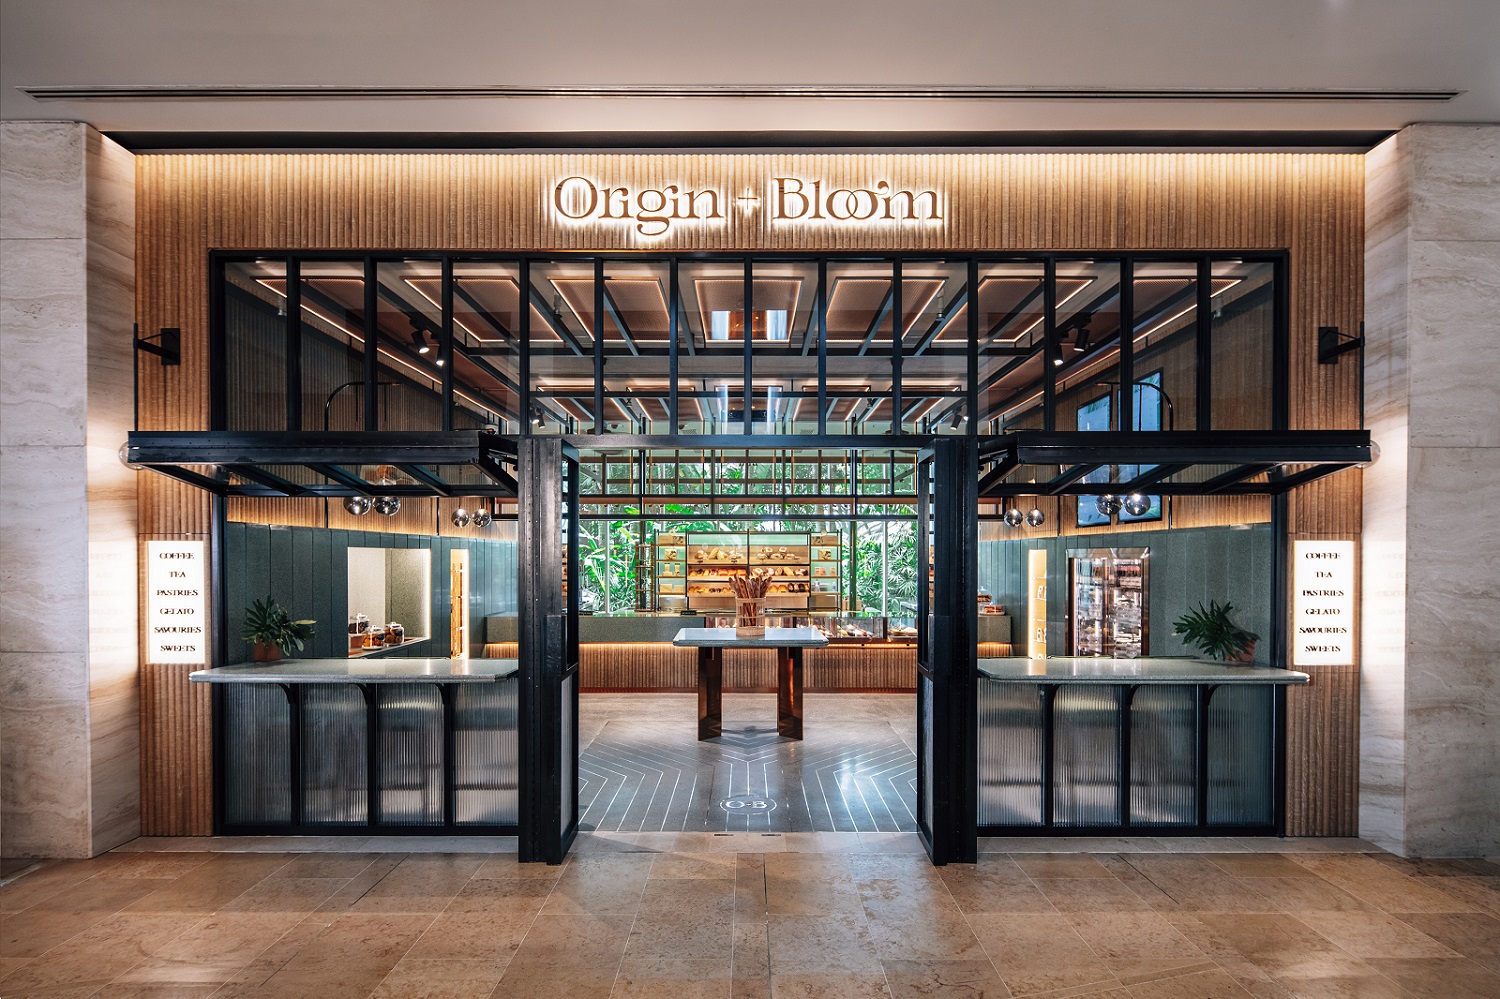 Origin + Bloom Interior (Marina Bay Sands)